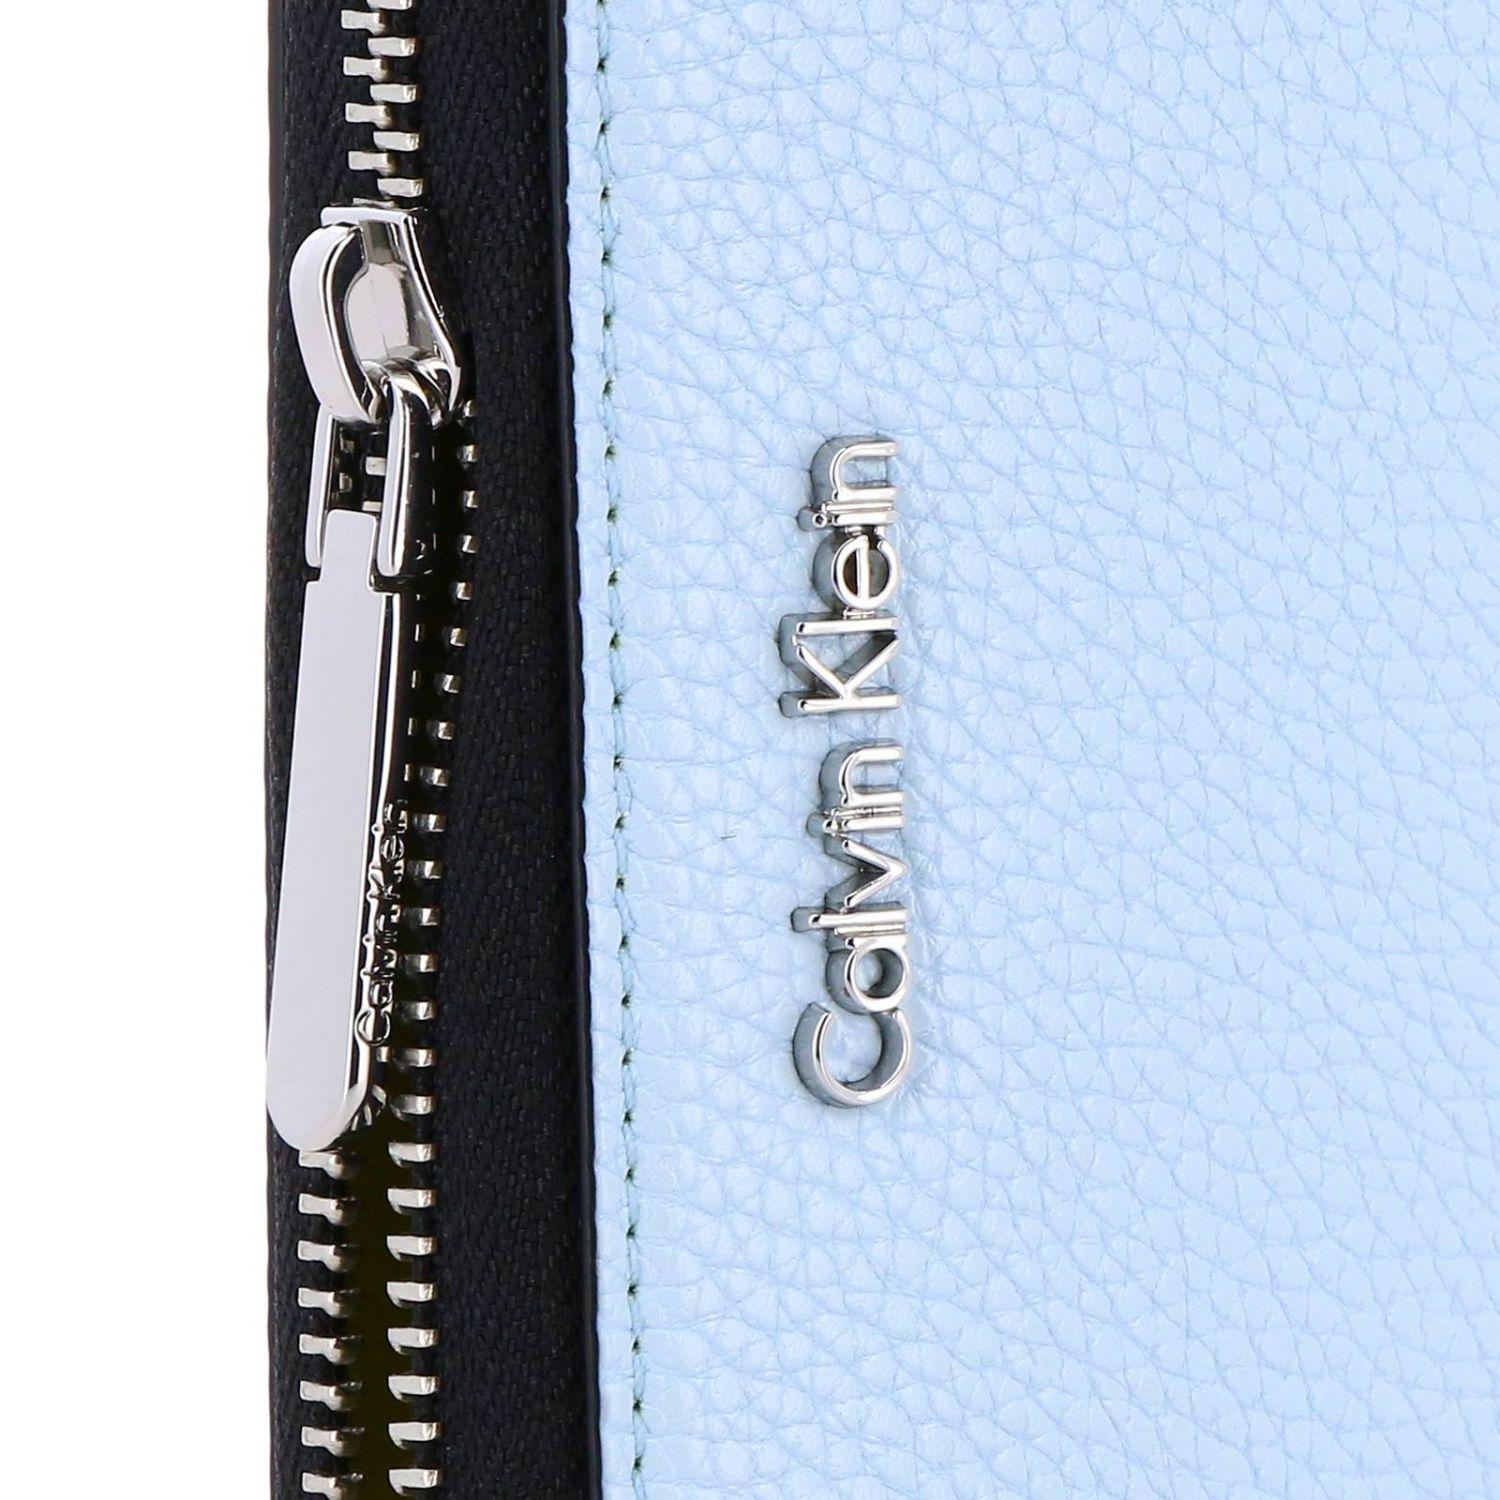 Calvin Klein Wallet in Blue | Lyst